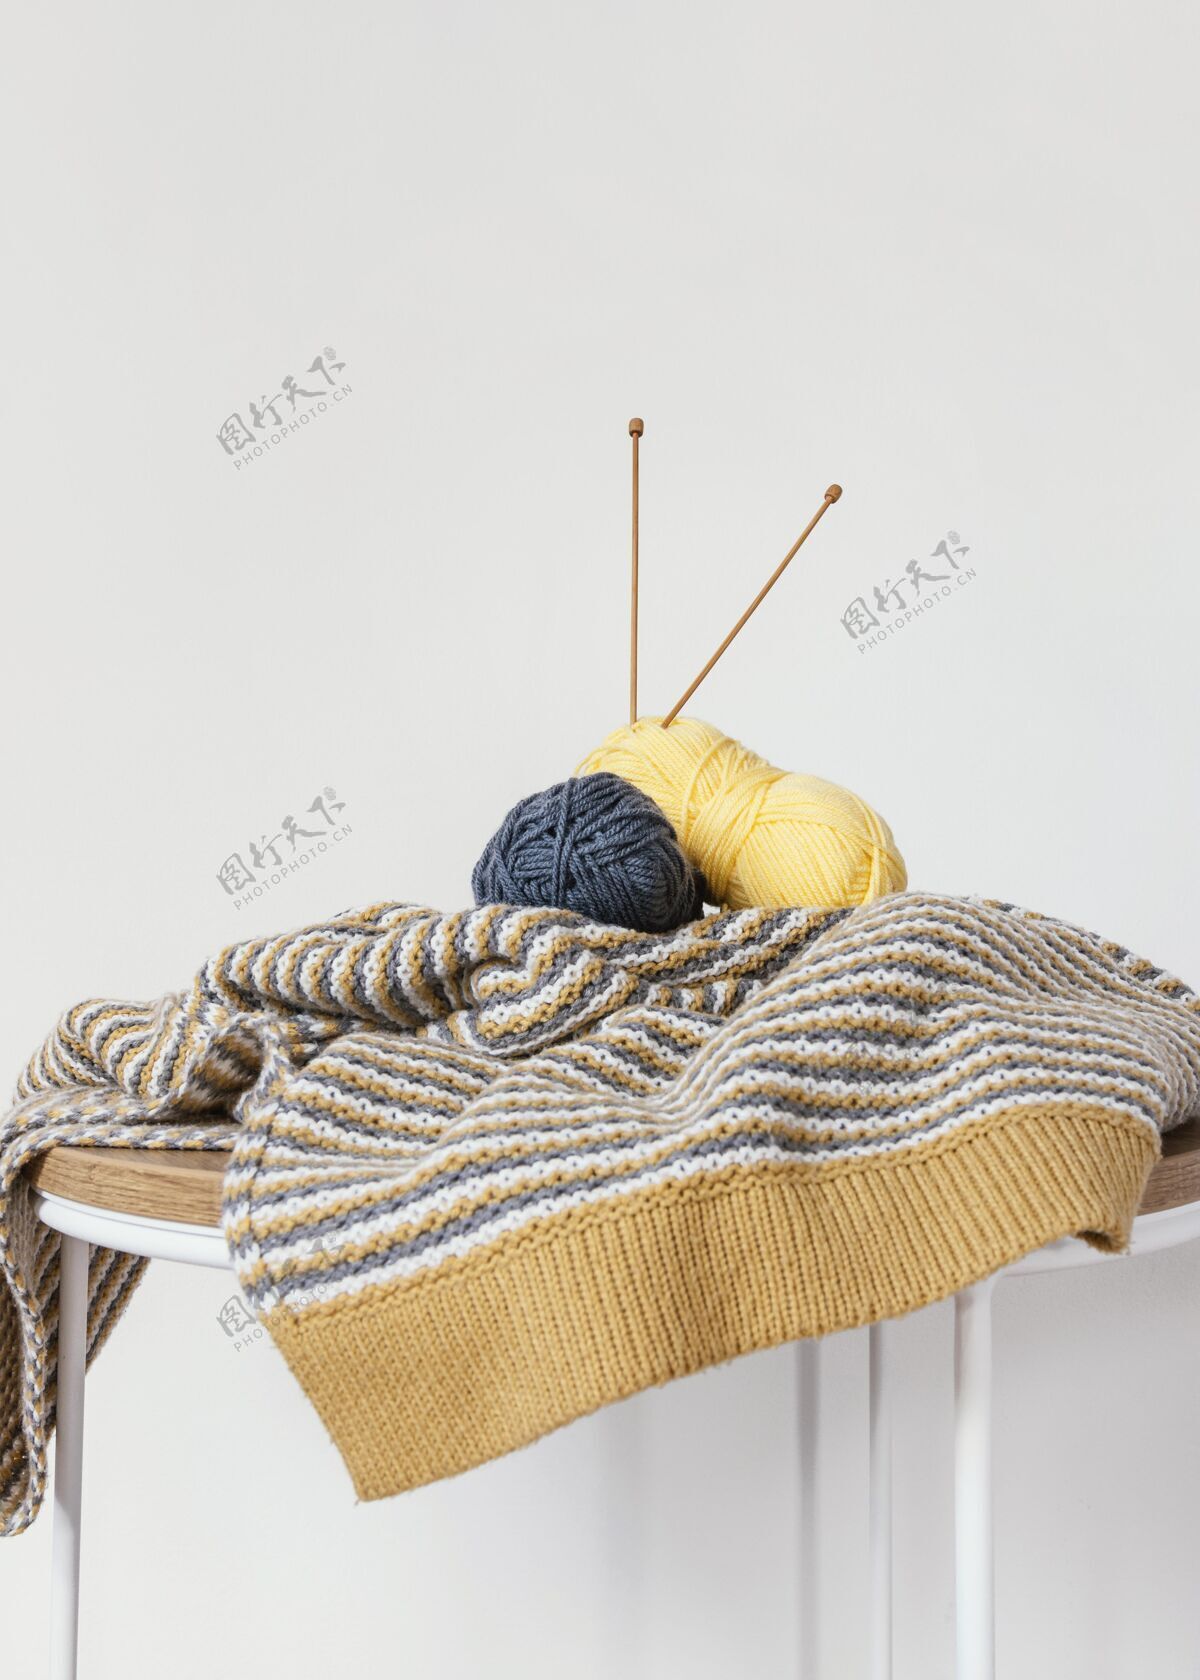 纺织品篮子里有羊毛和针织针表线编织者